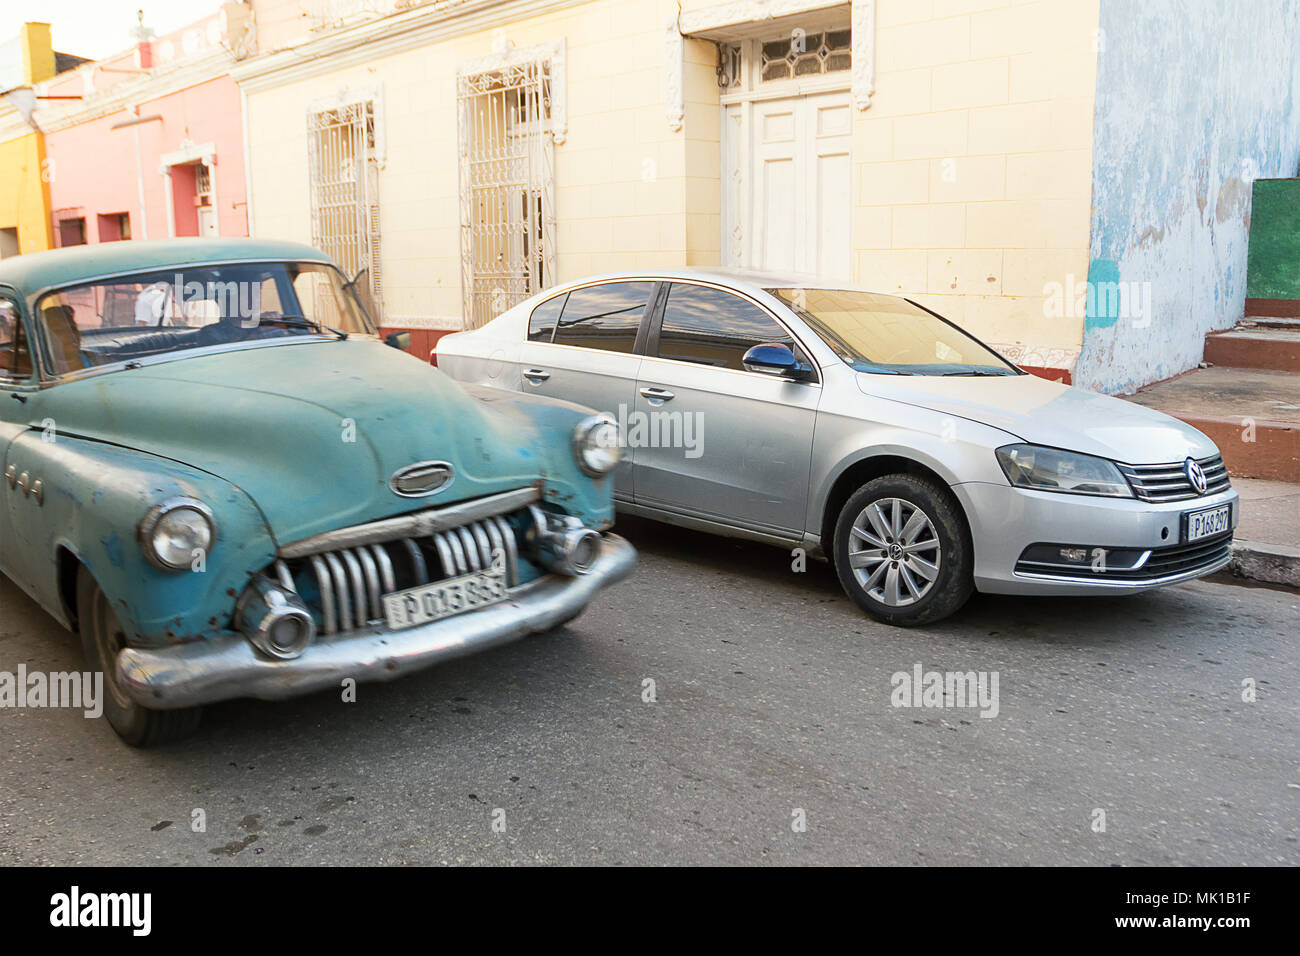 Trinidad, Cuba - 8 décembre 2017 : nouvelle voiture par rapport à une vieille voiture à Trinidad de Cuba Banque D'Images